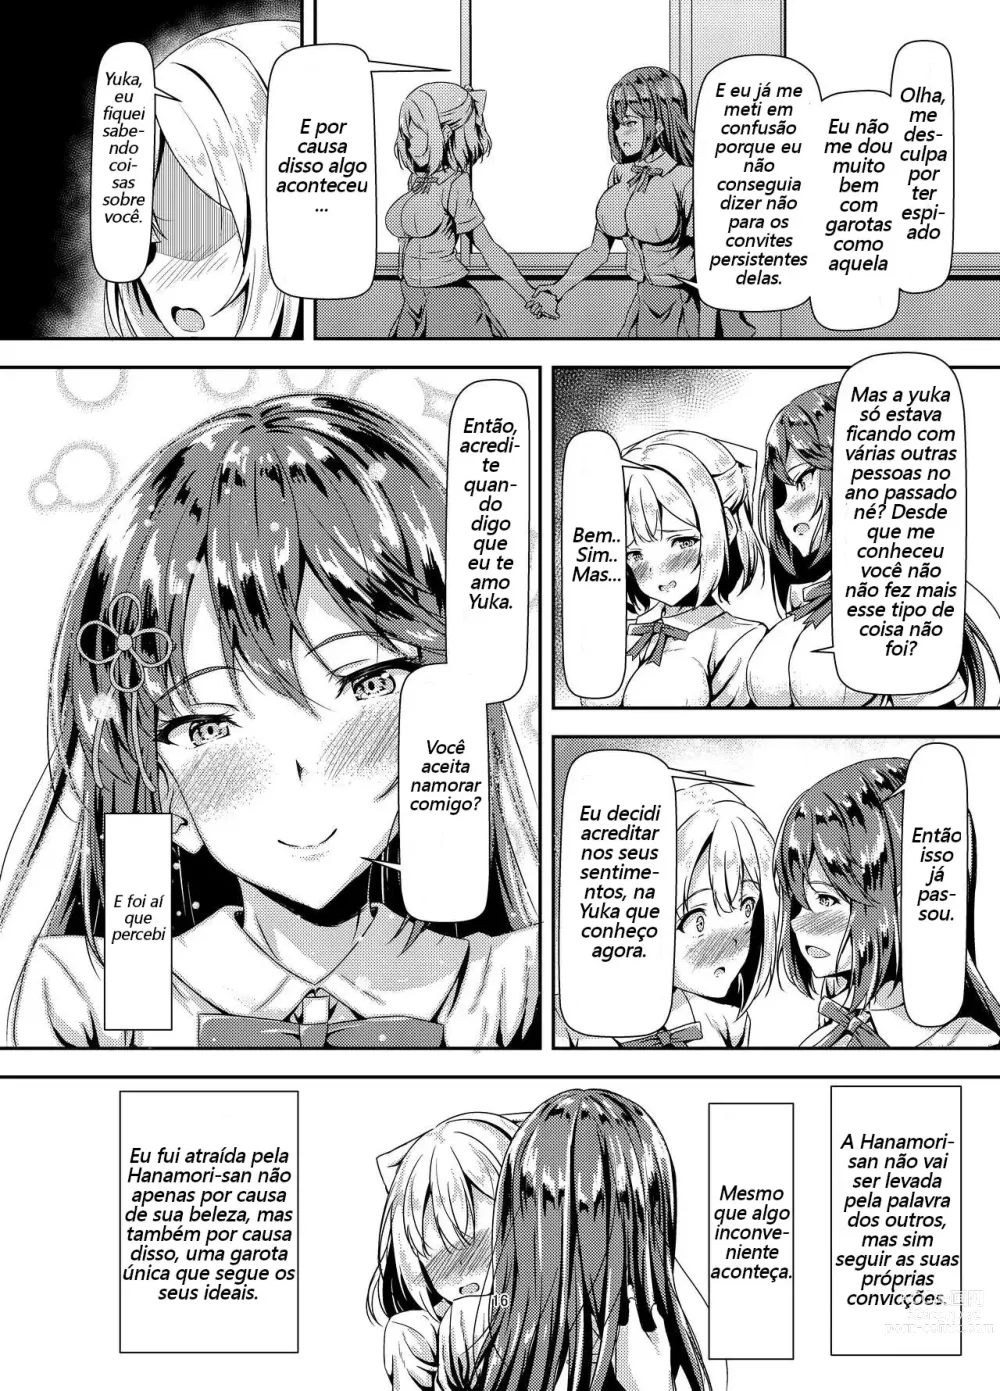 Page 15 of doujinshi Quero ter sexo de amor puro com uma Futanari morena de cabelos compridos!